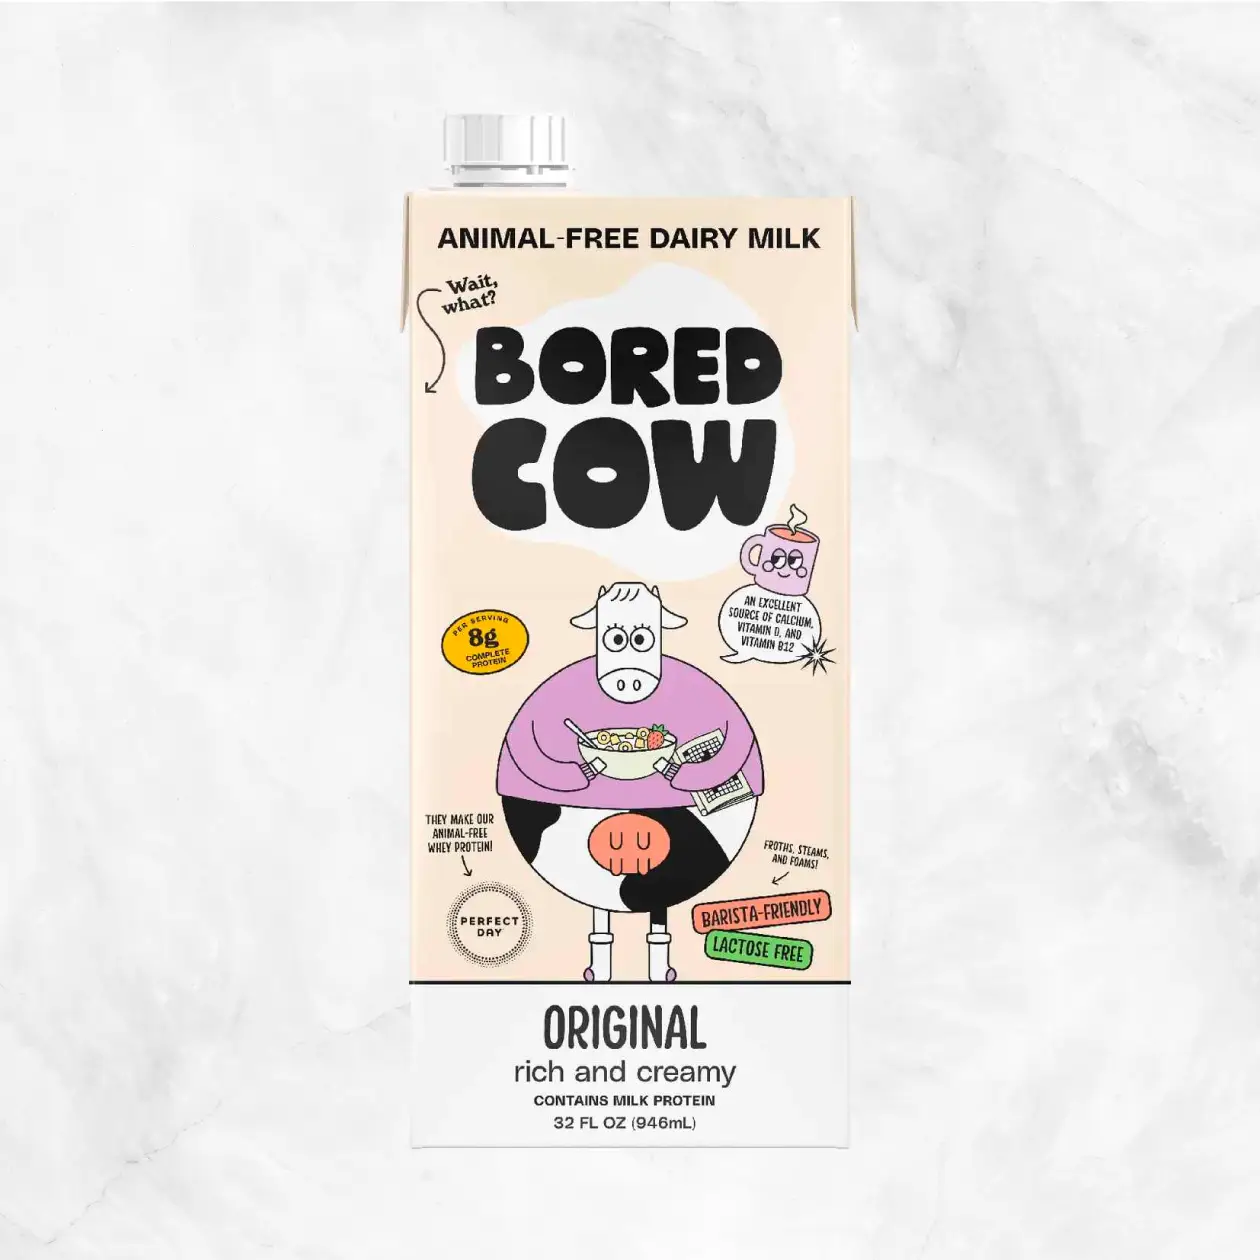 Original Animal-Free Dairy Milk